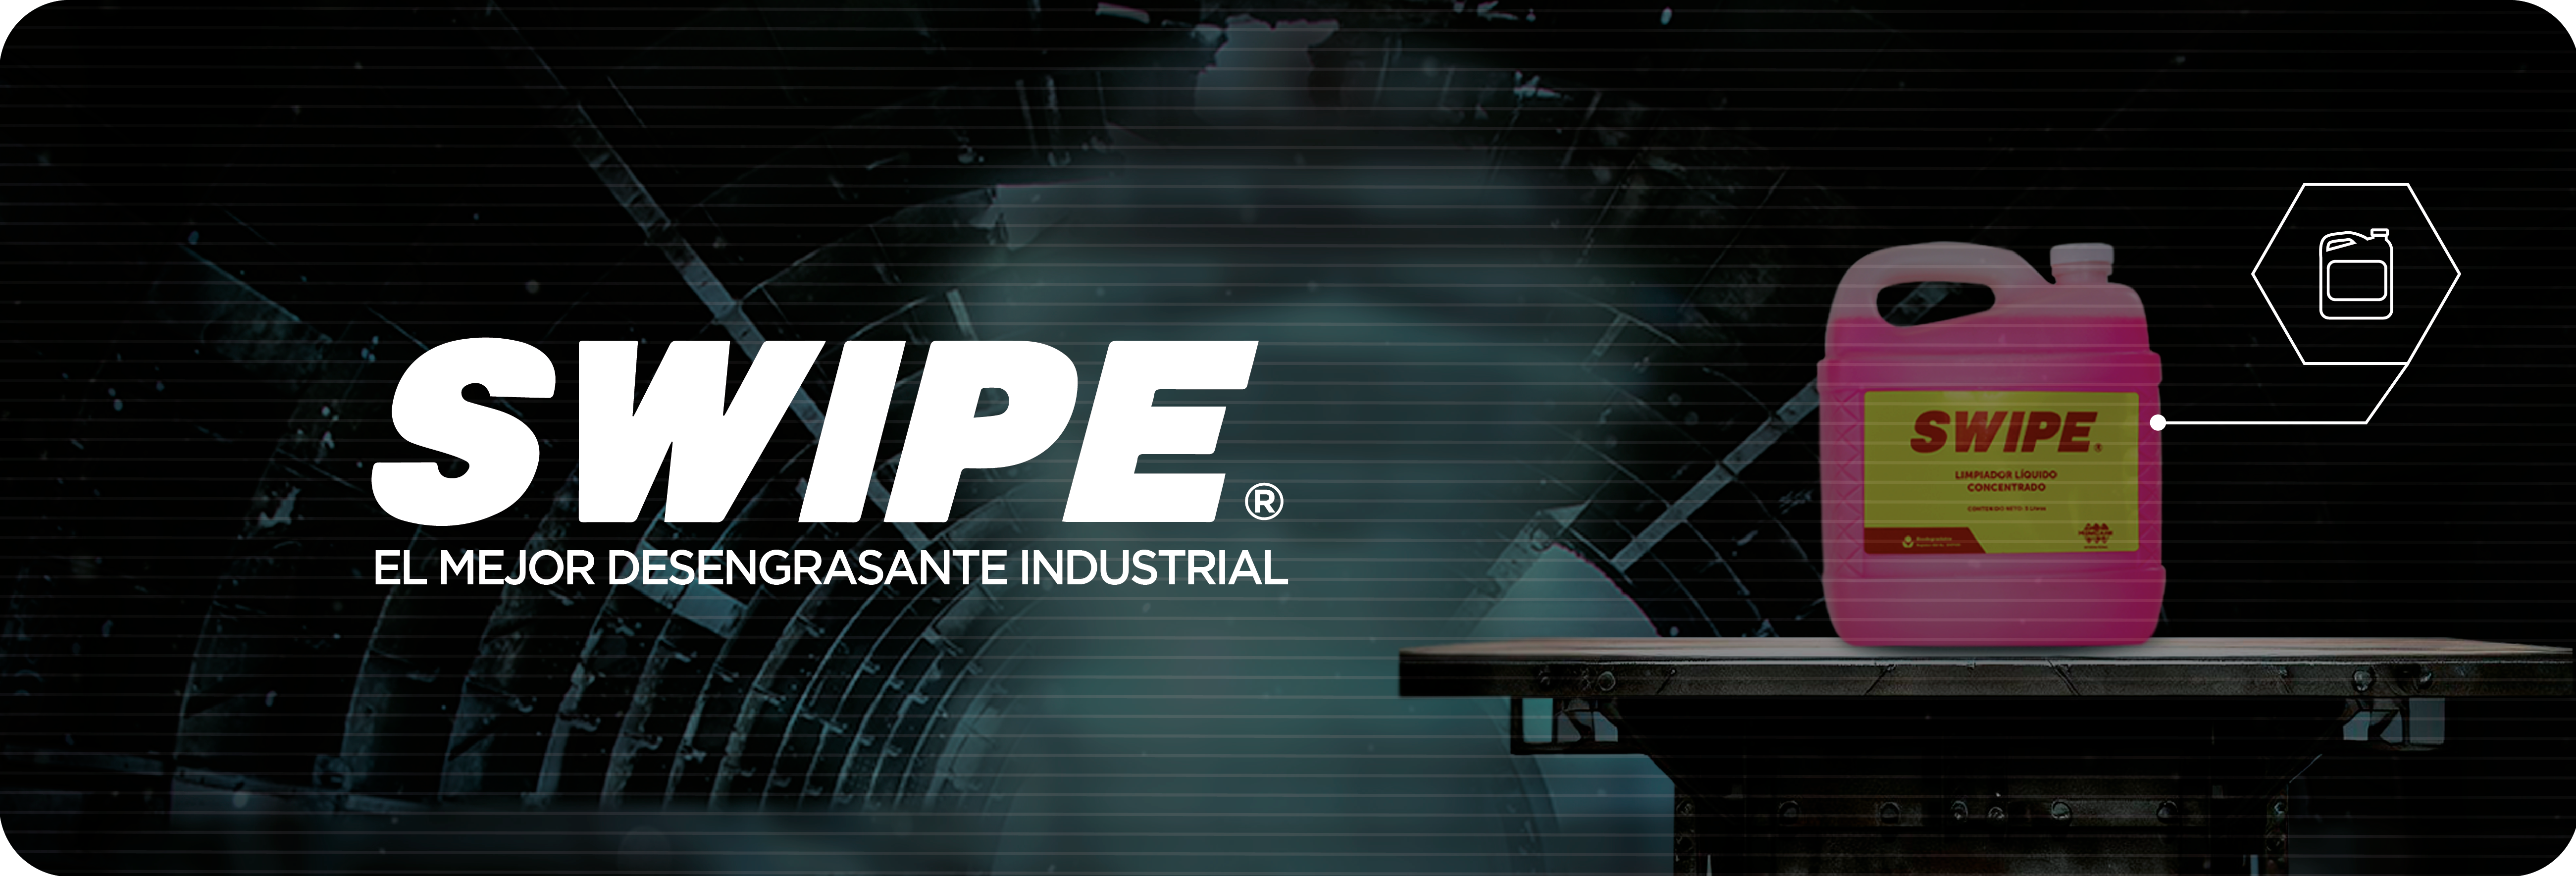 SWIPE – El Mejor Desengrasante Industrial